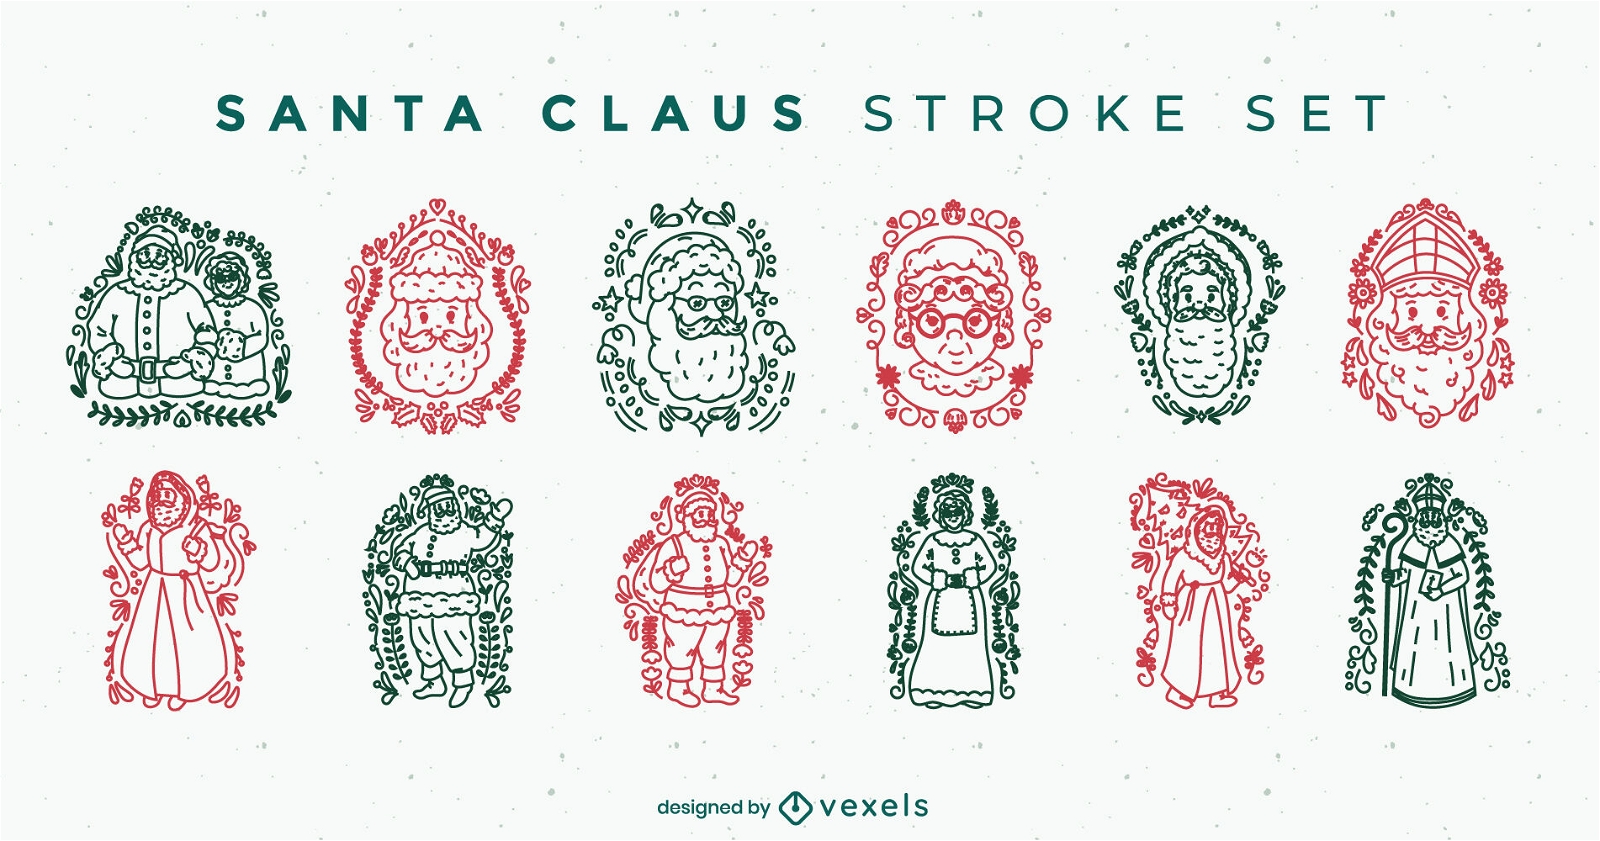 Santa Claus christmas character stroke set